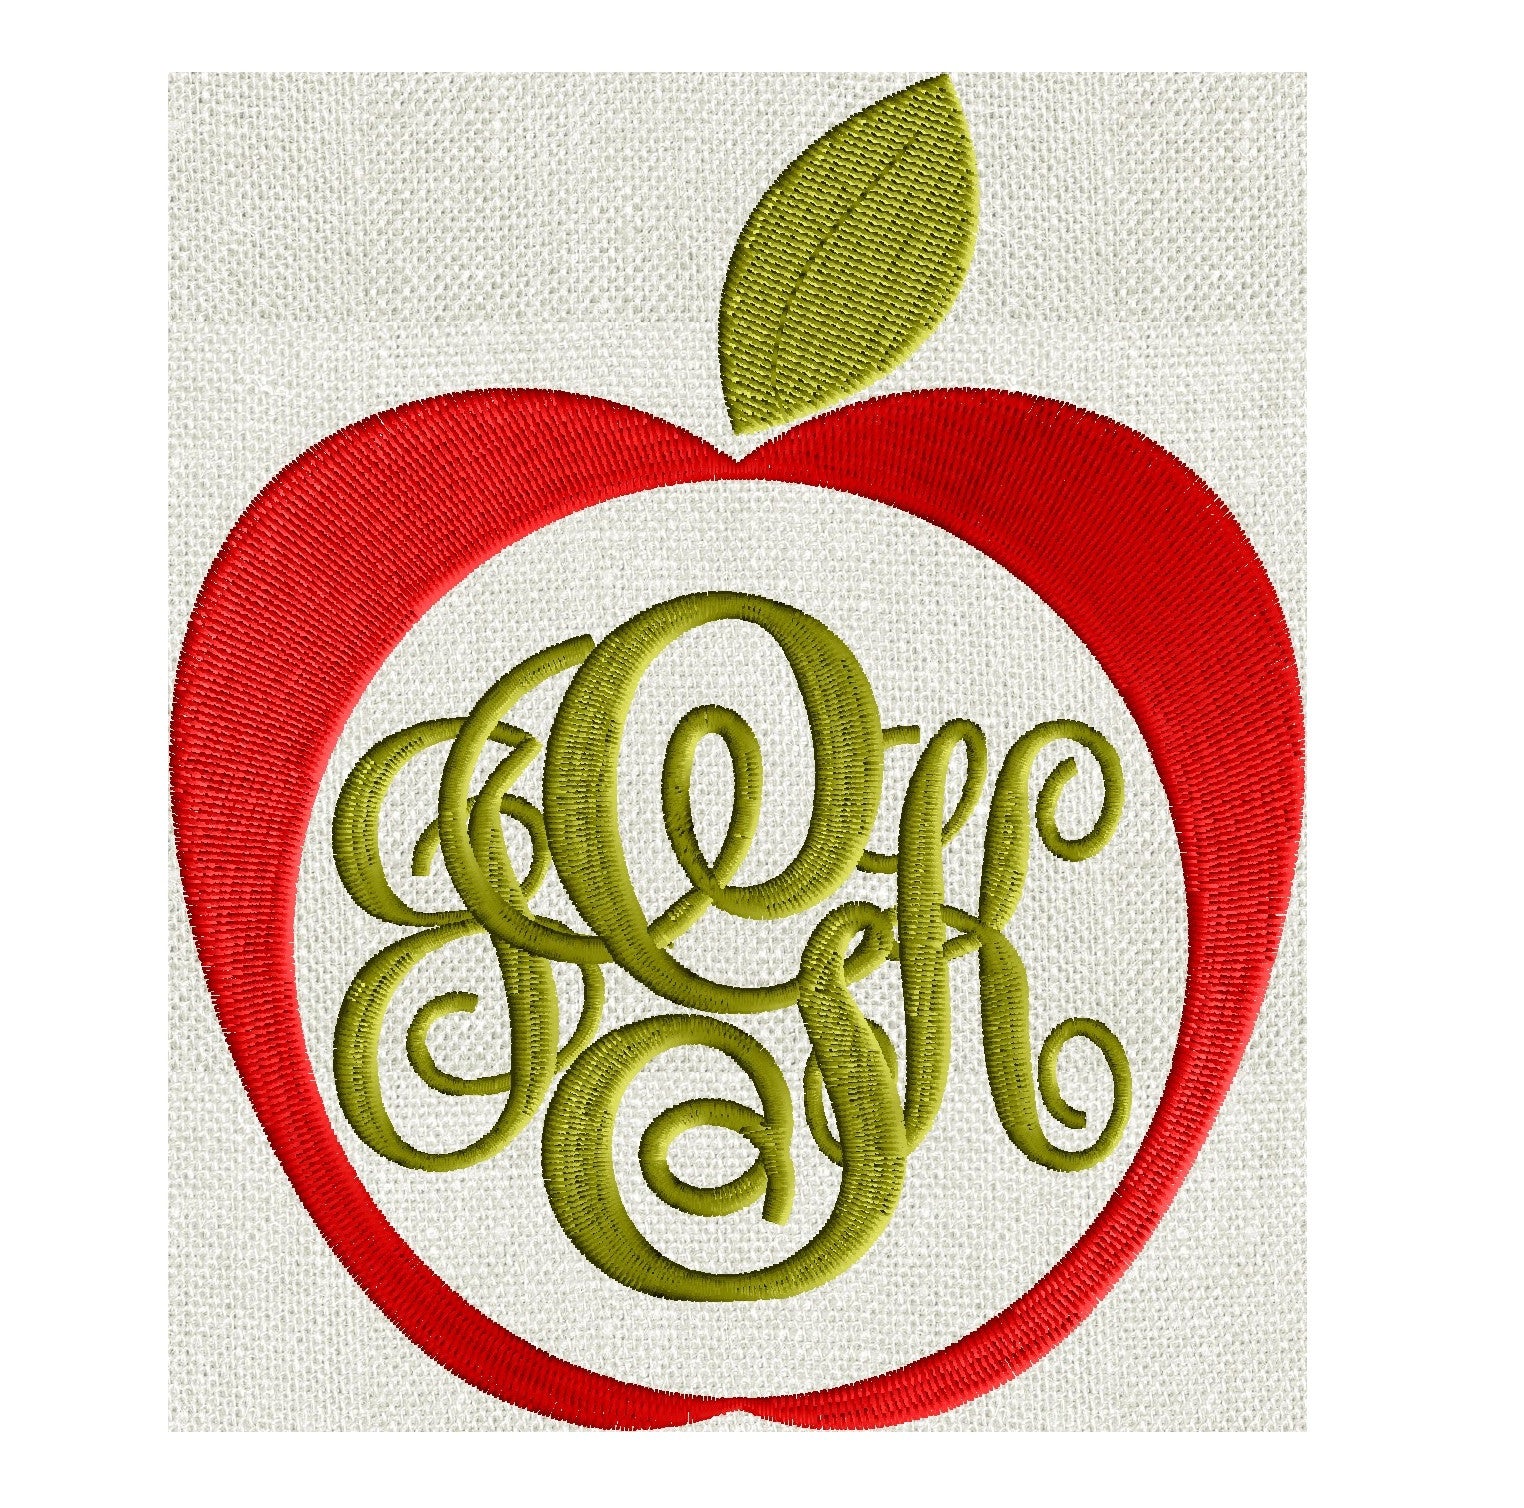 Apple Frame Design - Fruit - EMBROIDERY DESIGN FILE - Instant download